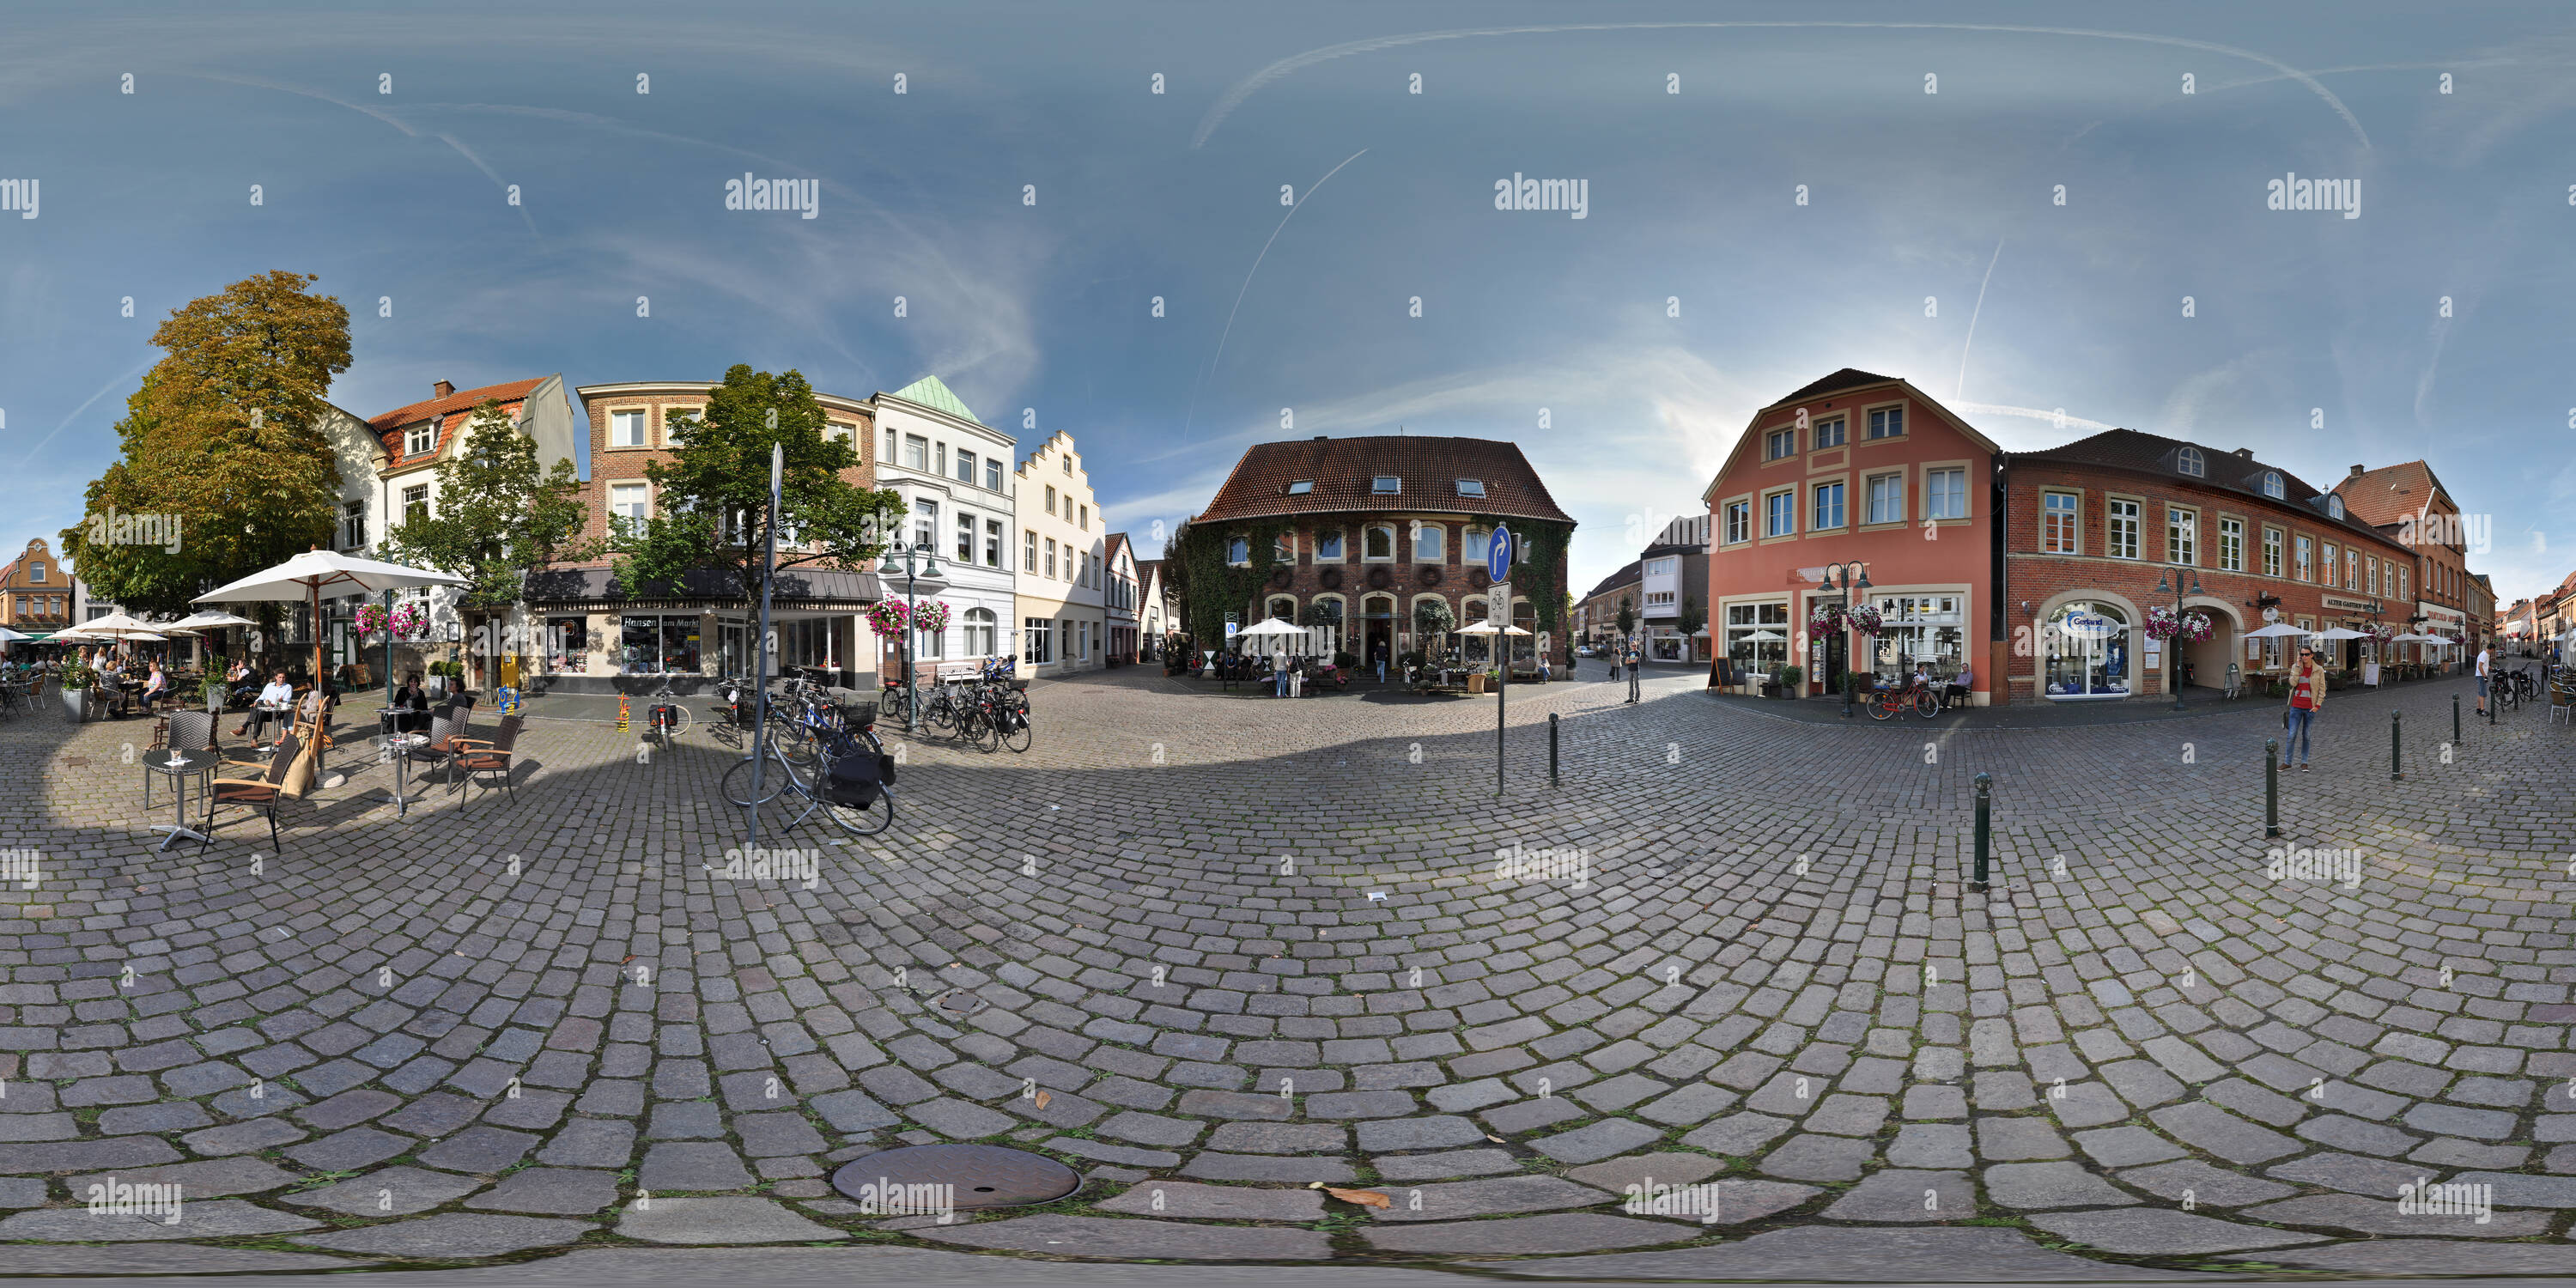 Visualizzazione panoramica a 360 gradi di Marktplatz, Zentrum im Wallfahrtsort Telgte